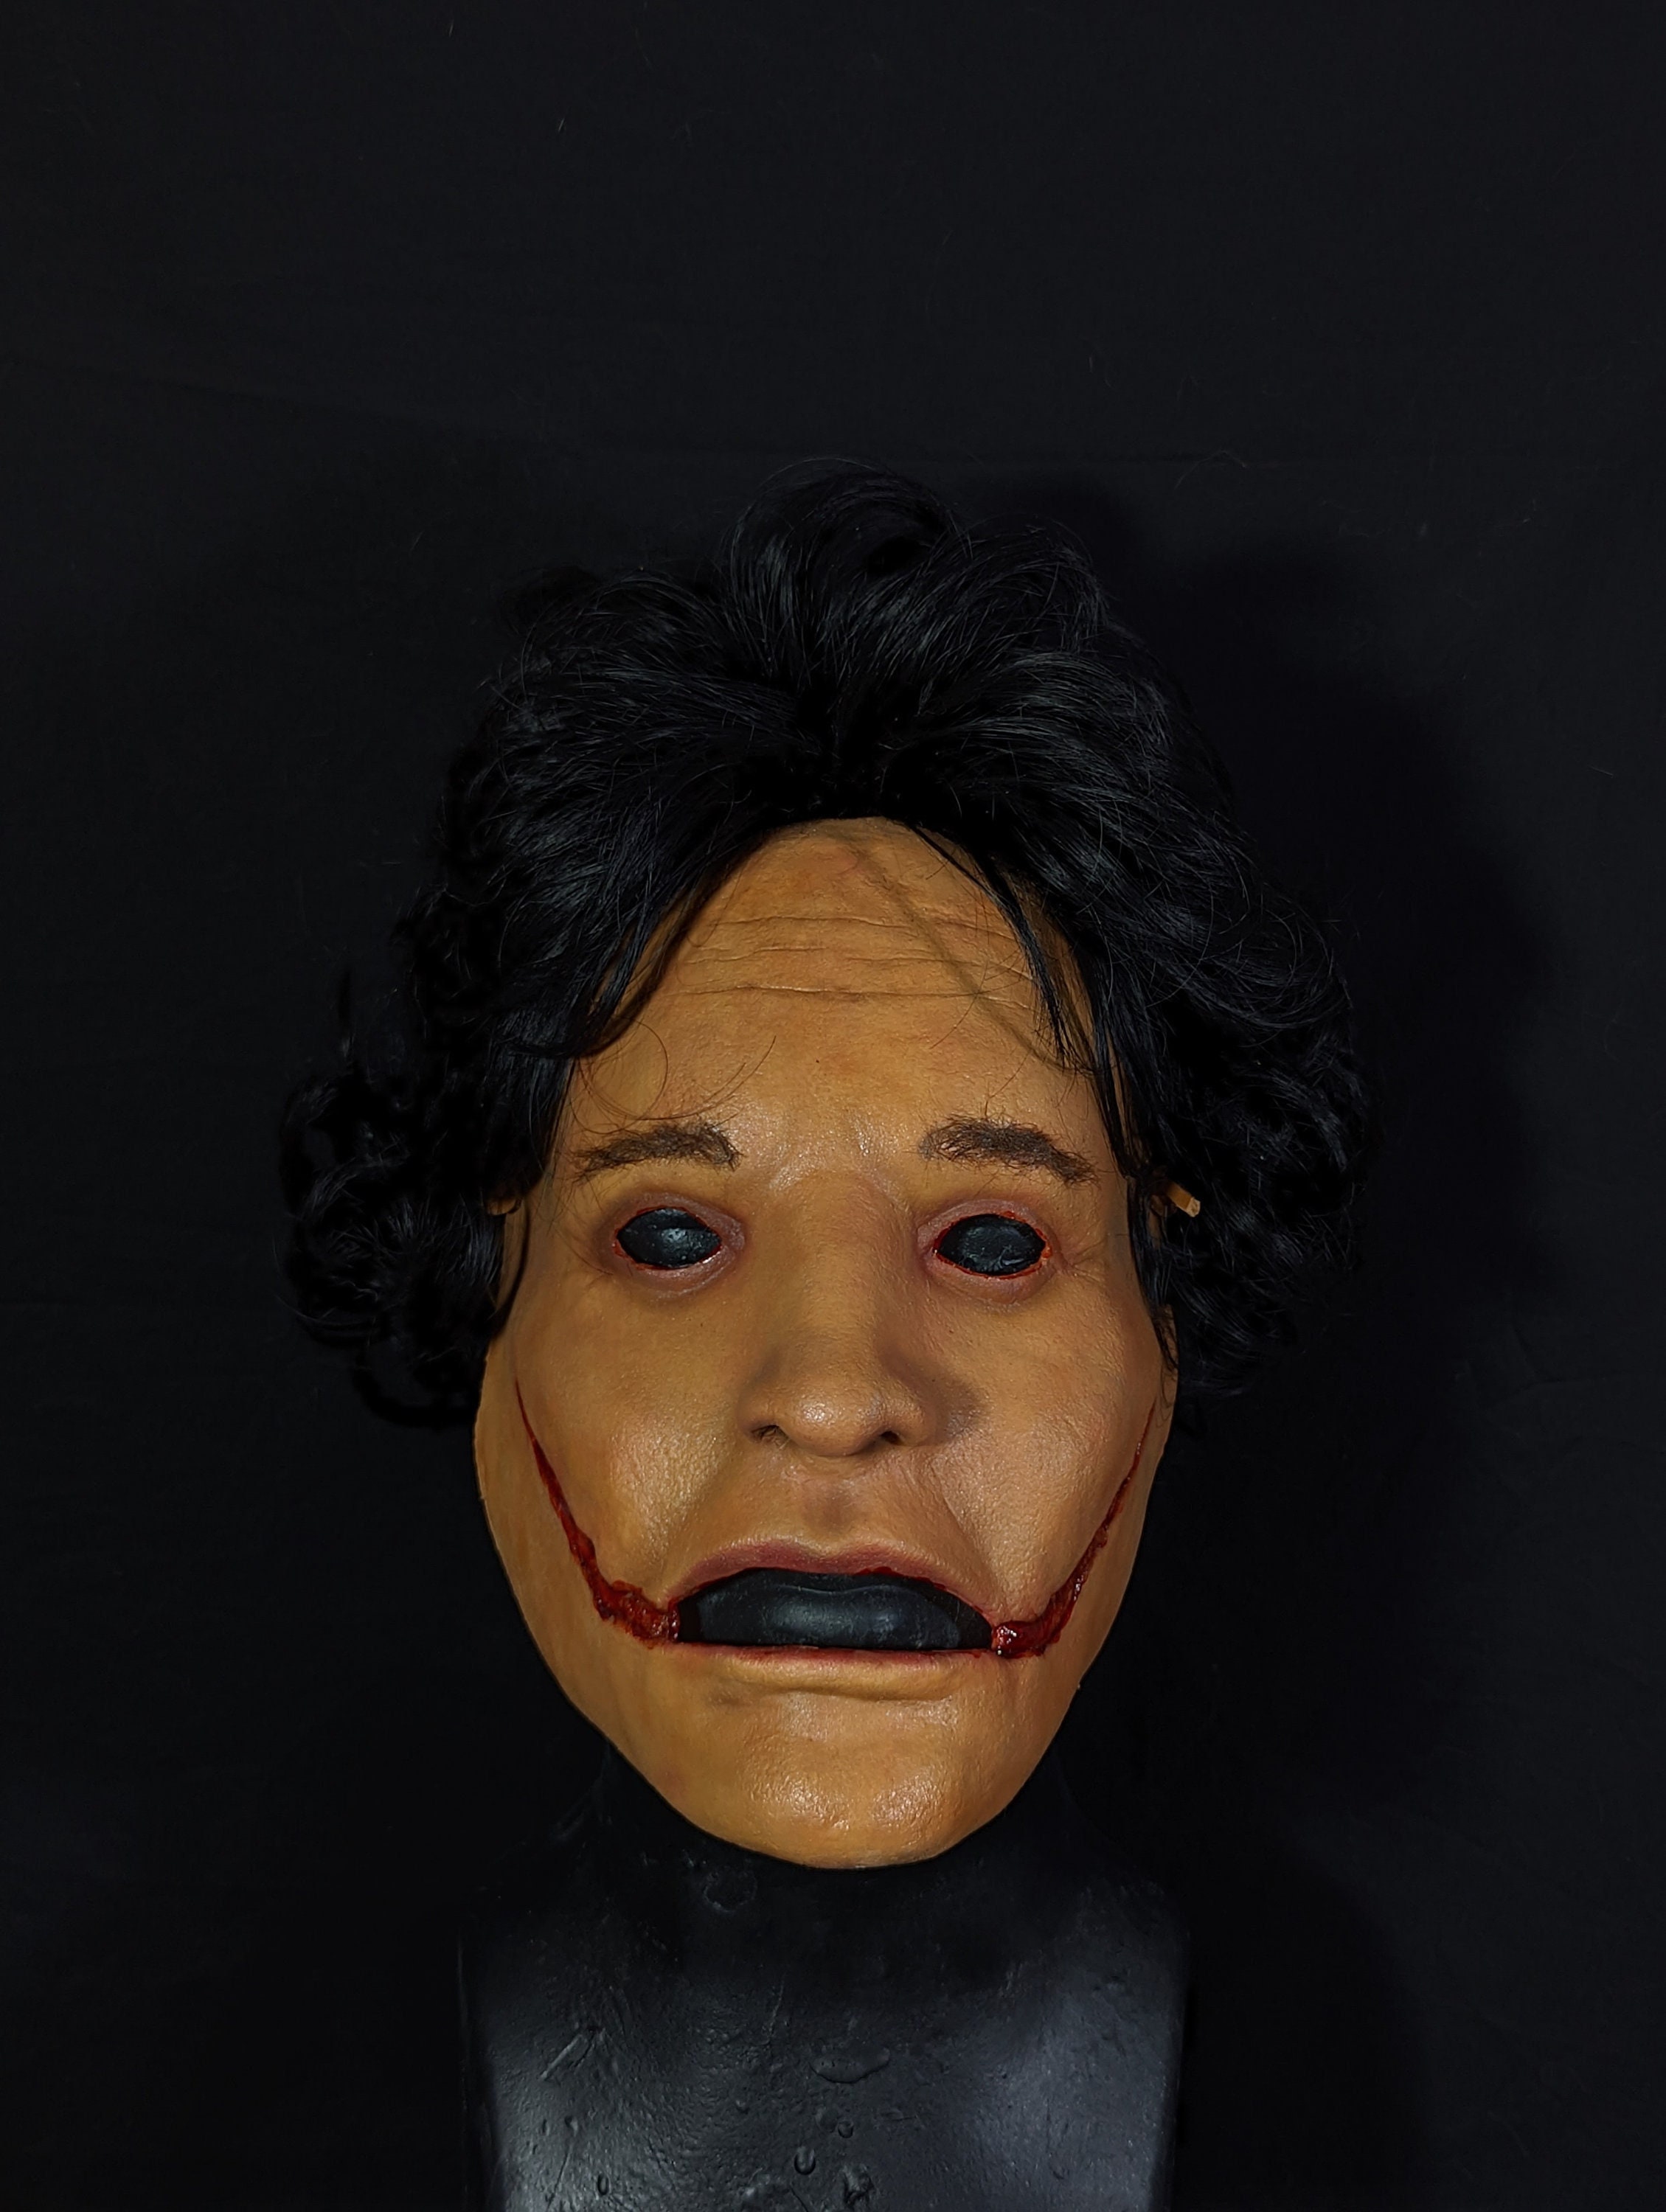 Máscara realista de cabeza calva para hombre, máscara de látex para rostro  humano, accesorios divertidos y aterradores para disfraz de Halloween